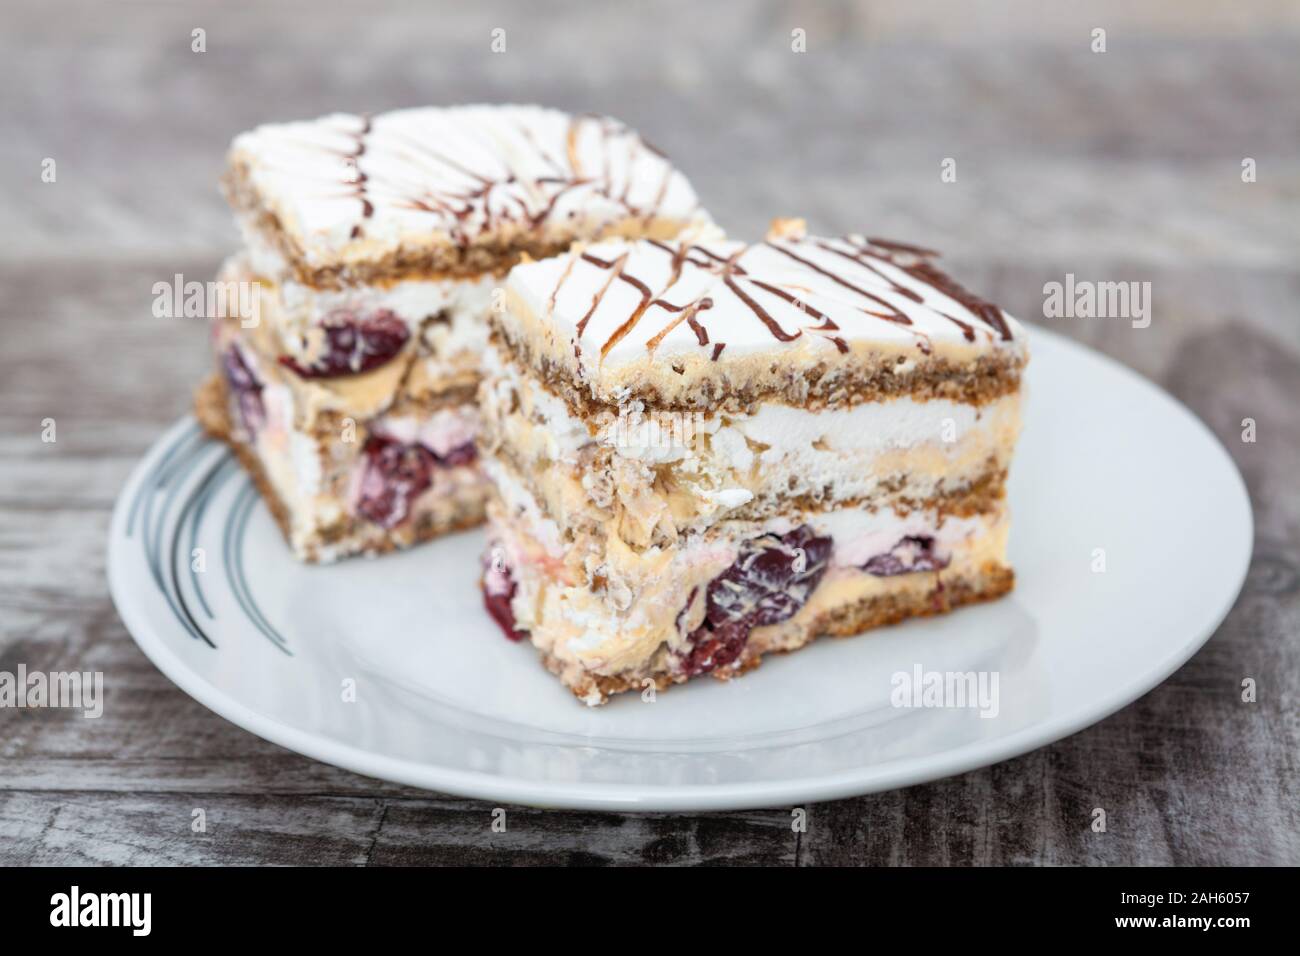 Walnut, cherry and vanilla cream cake Stock Photo